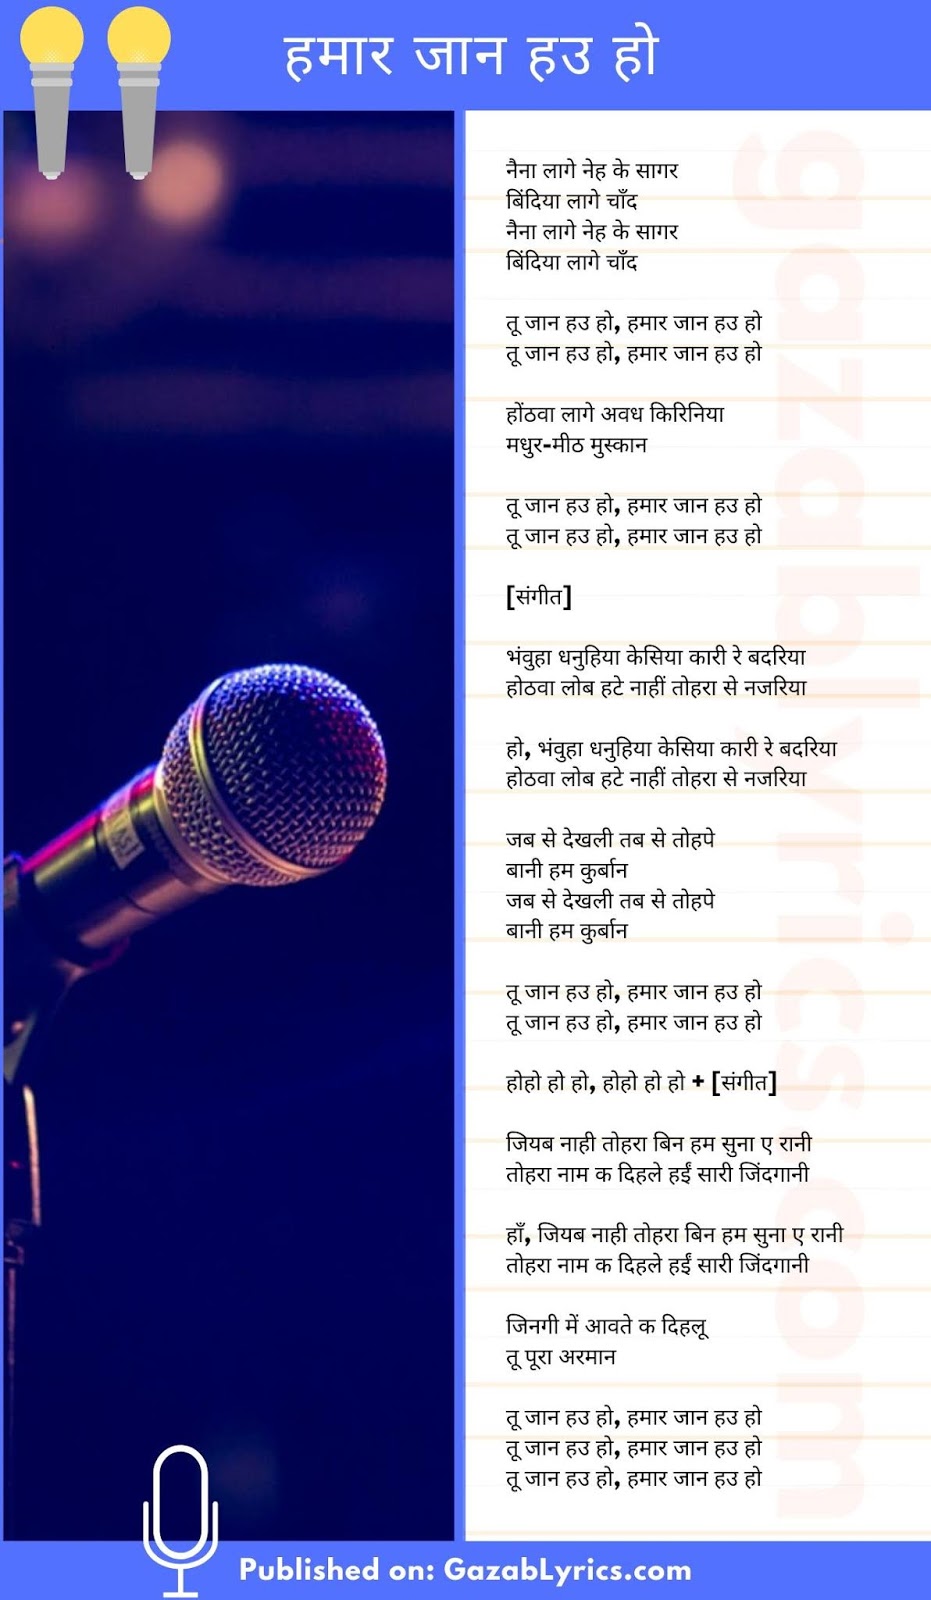 Hamar Jaan Hau Ho song lyrics image